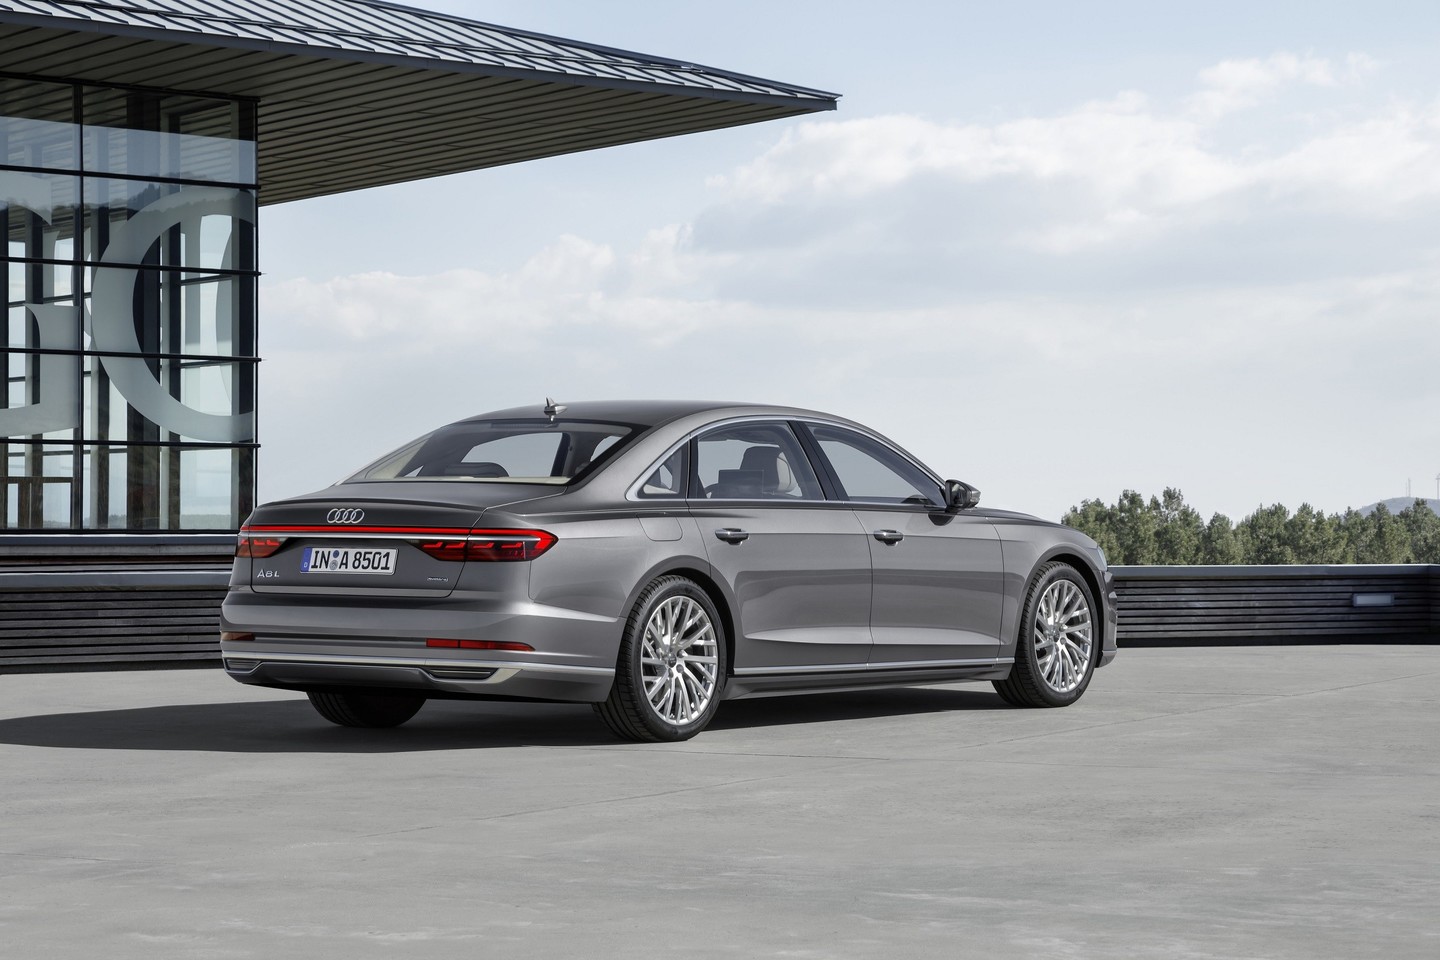  Į Lietuvą atvyksta naujos kartos „Audi A8".<br>Organizatorių nuotr.